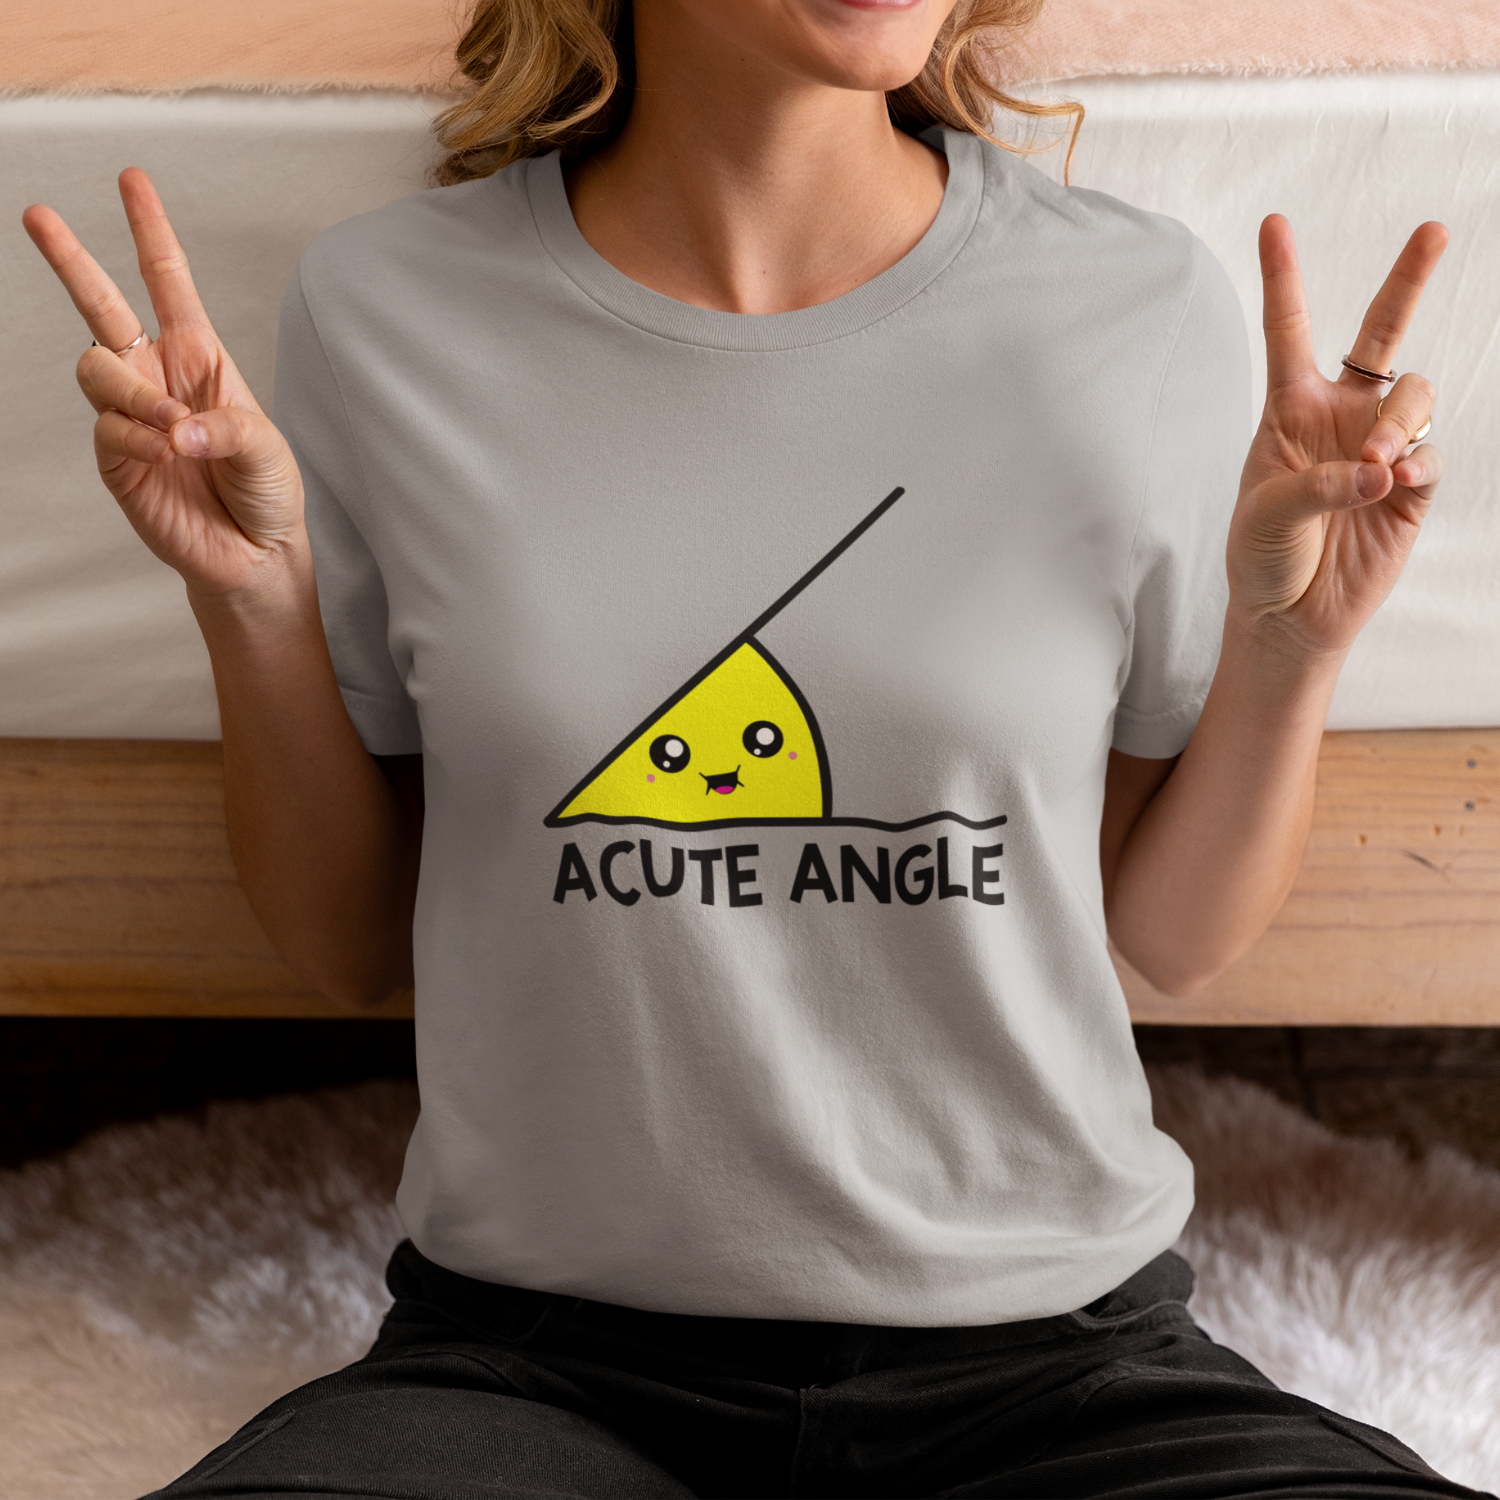 Acute Angle T Shirt